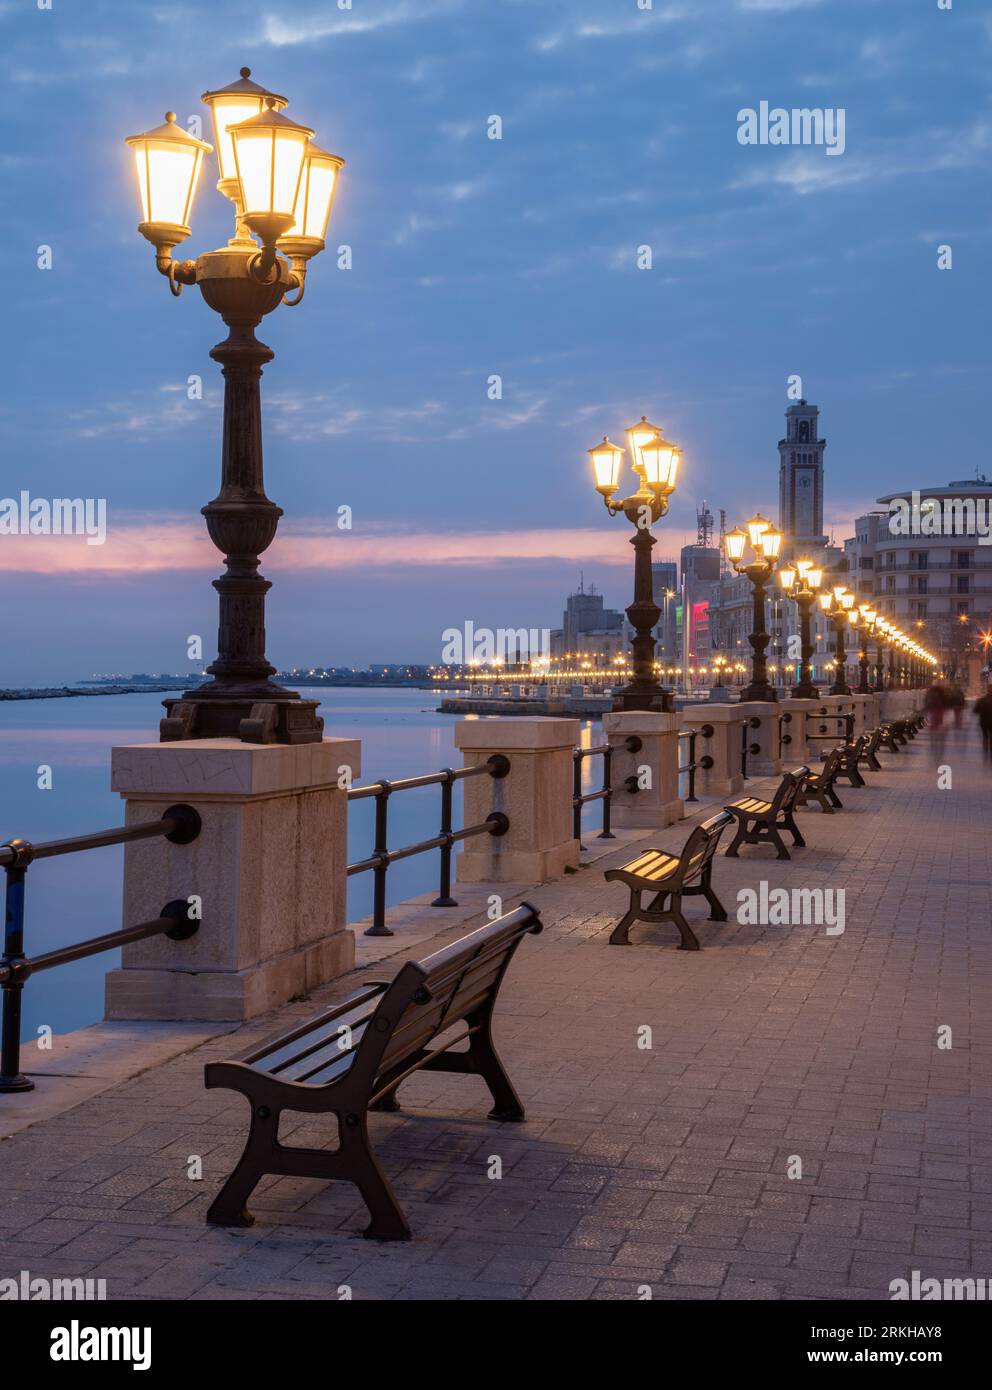 Bari - The promenade at dusk. Stock Photo